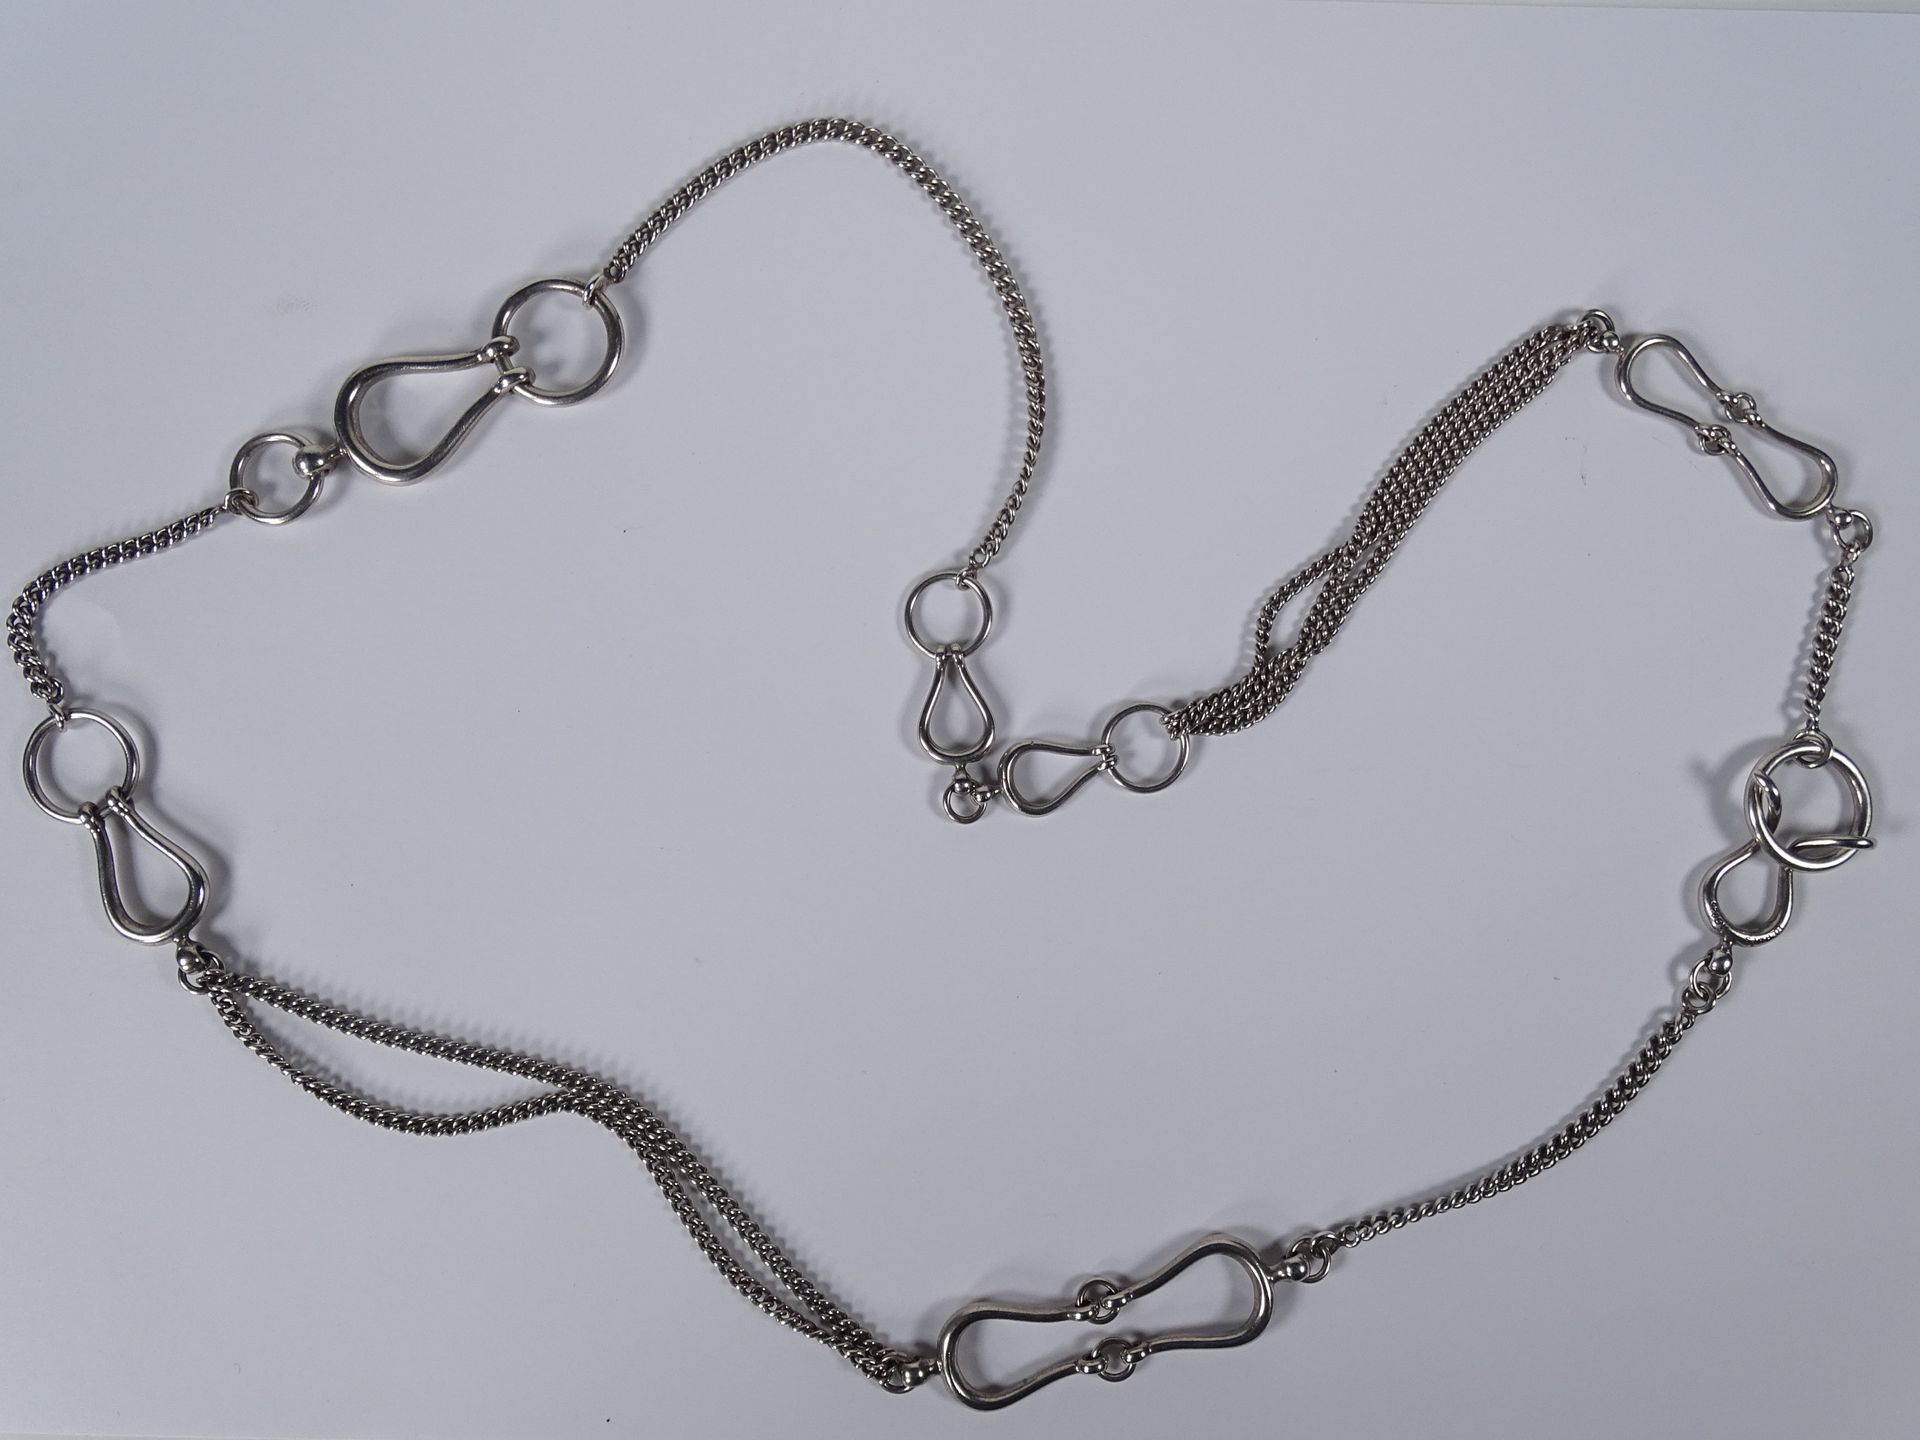 HERMES Silberne Halskette, verziert mit sytilisierten Gebissen.

Länge: 80 cm.

&hellip;